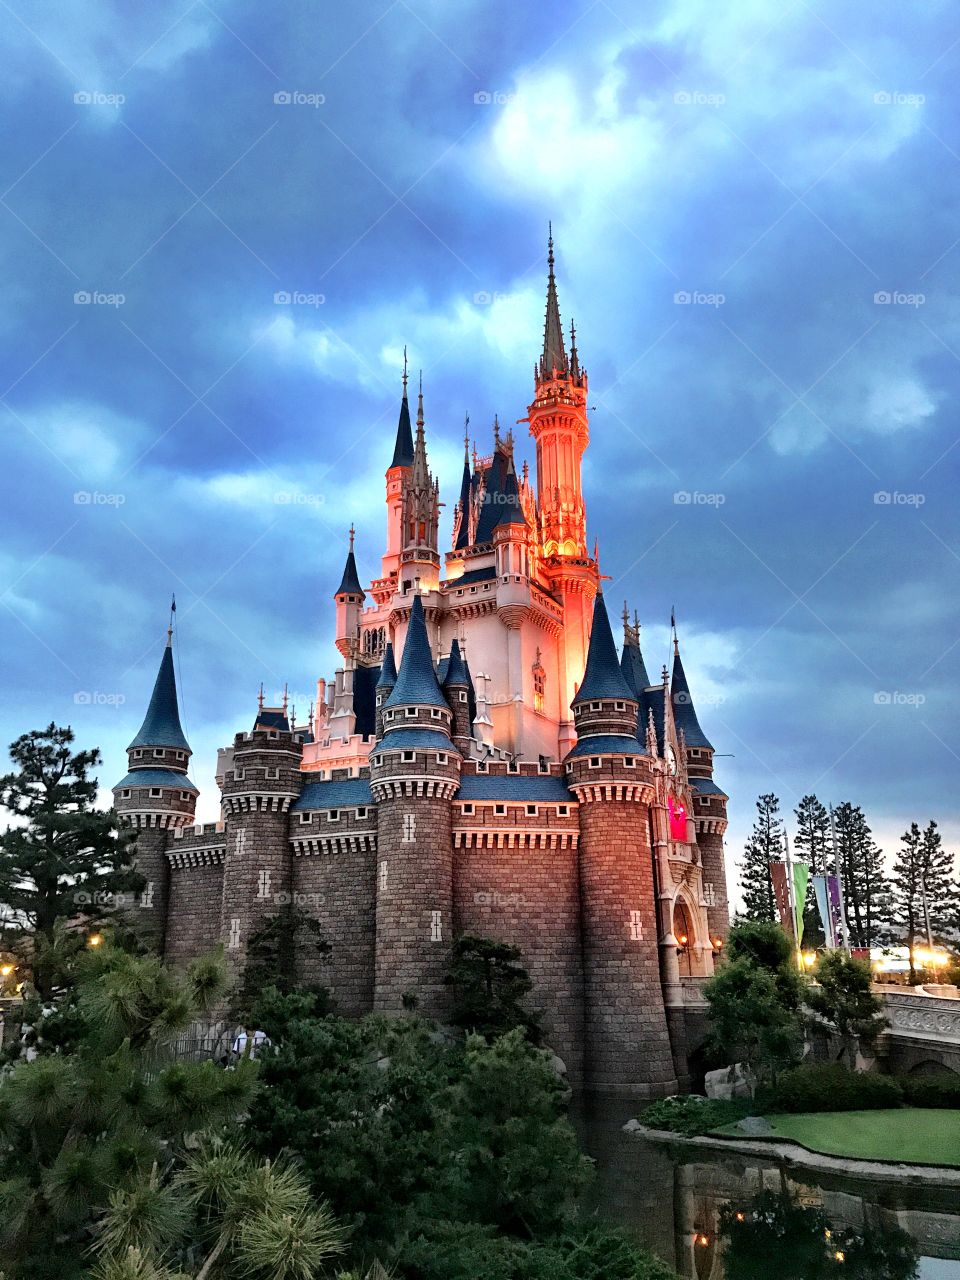 Tokyo Disney Land Resort Cinderella Castle